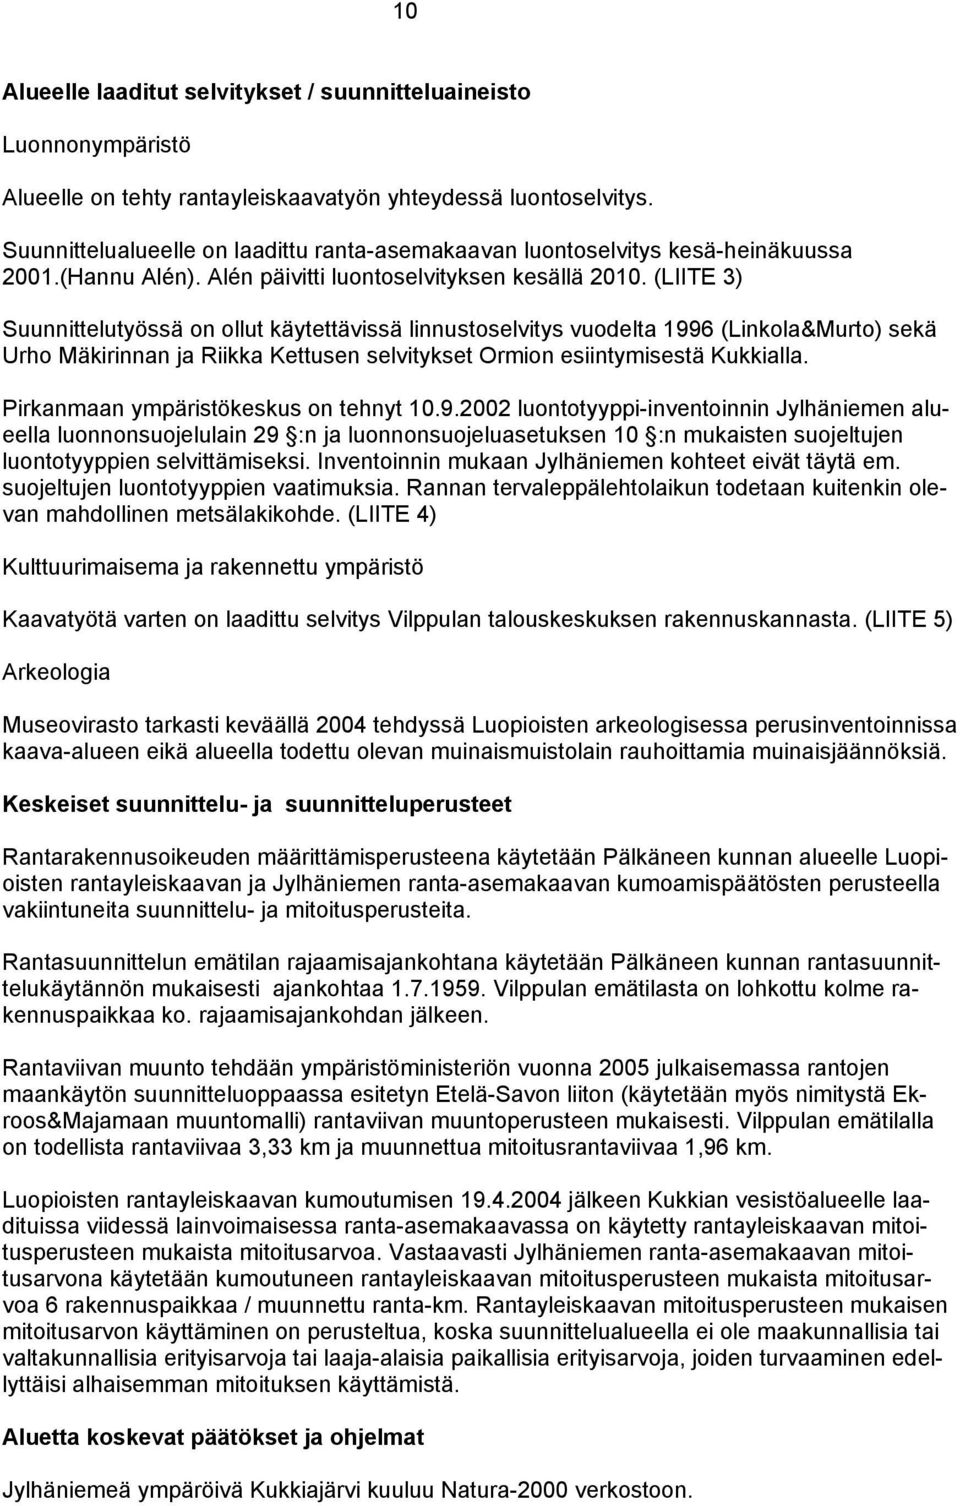 LIITE 3) Suunnittelutyössä on ollut käytettävissä linnustoselvitys vuodelta 1996 Linkola&Murto) sekä Urho Mäkirinnan ja Riikka Kettusen selvitykset Ormion esiintymisestä Kukkialla.